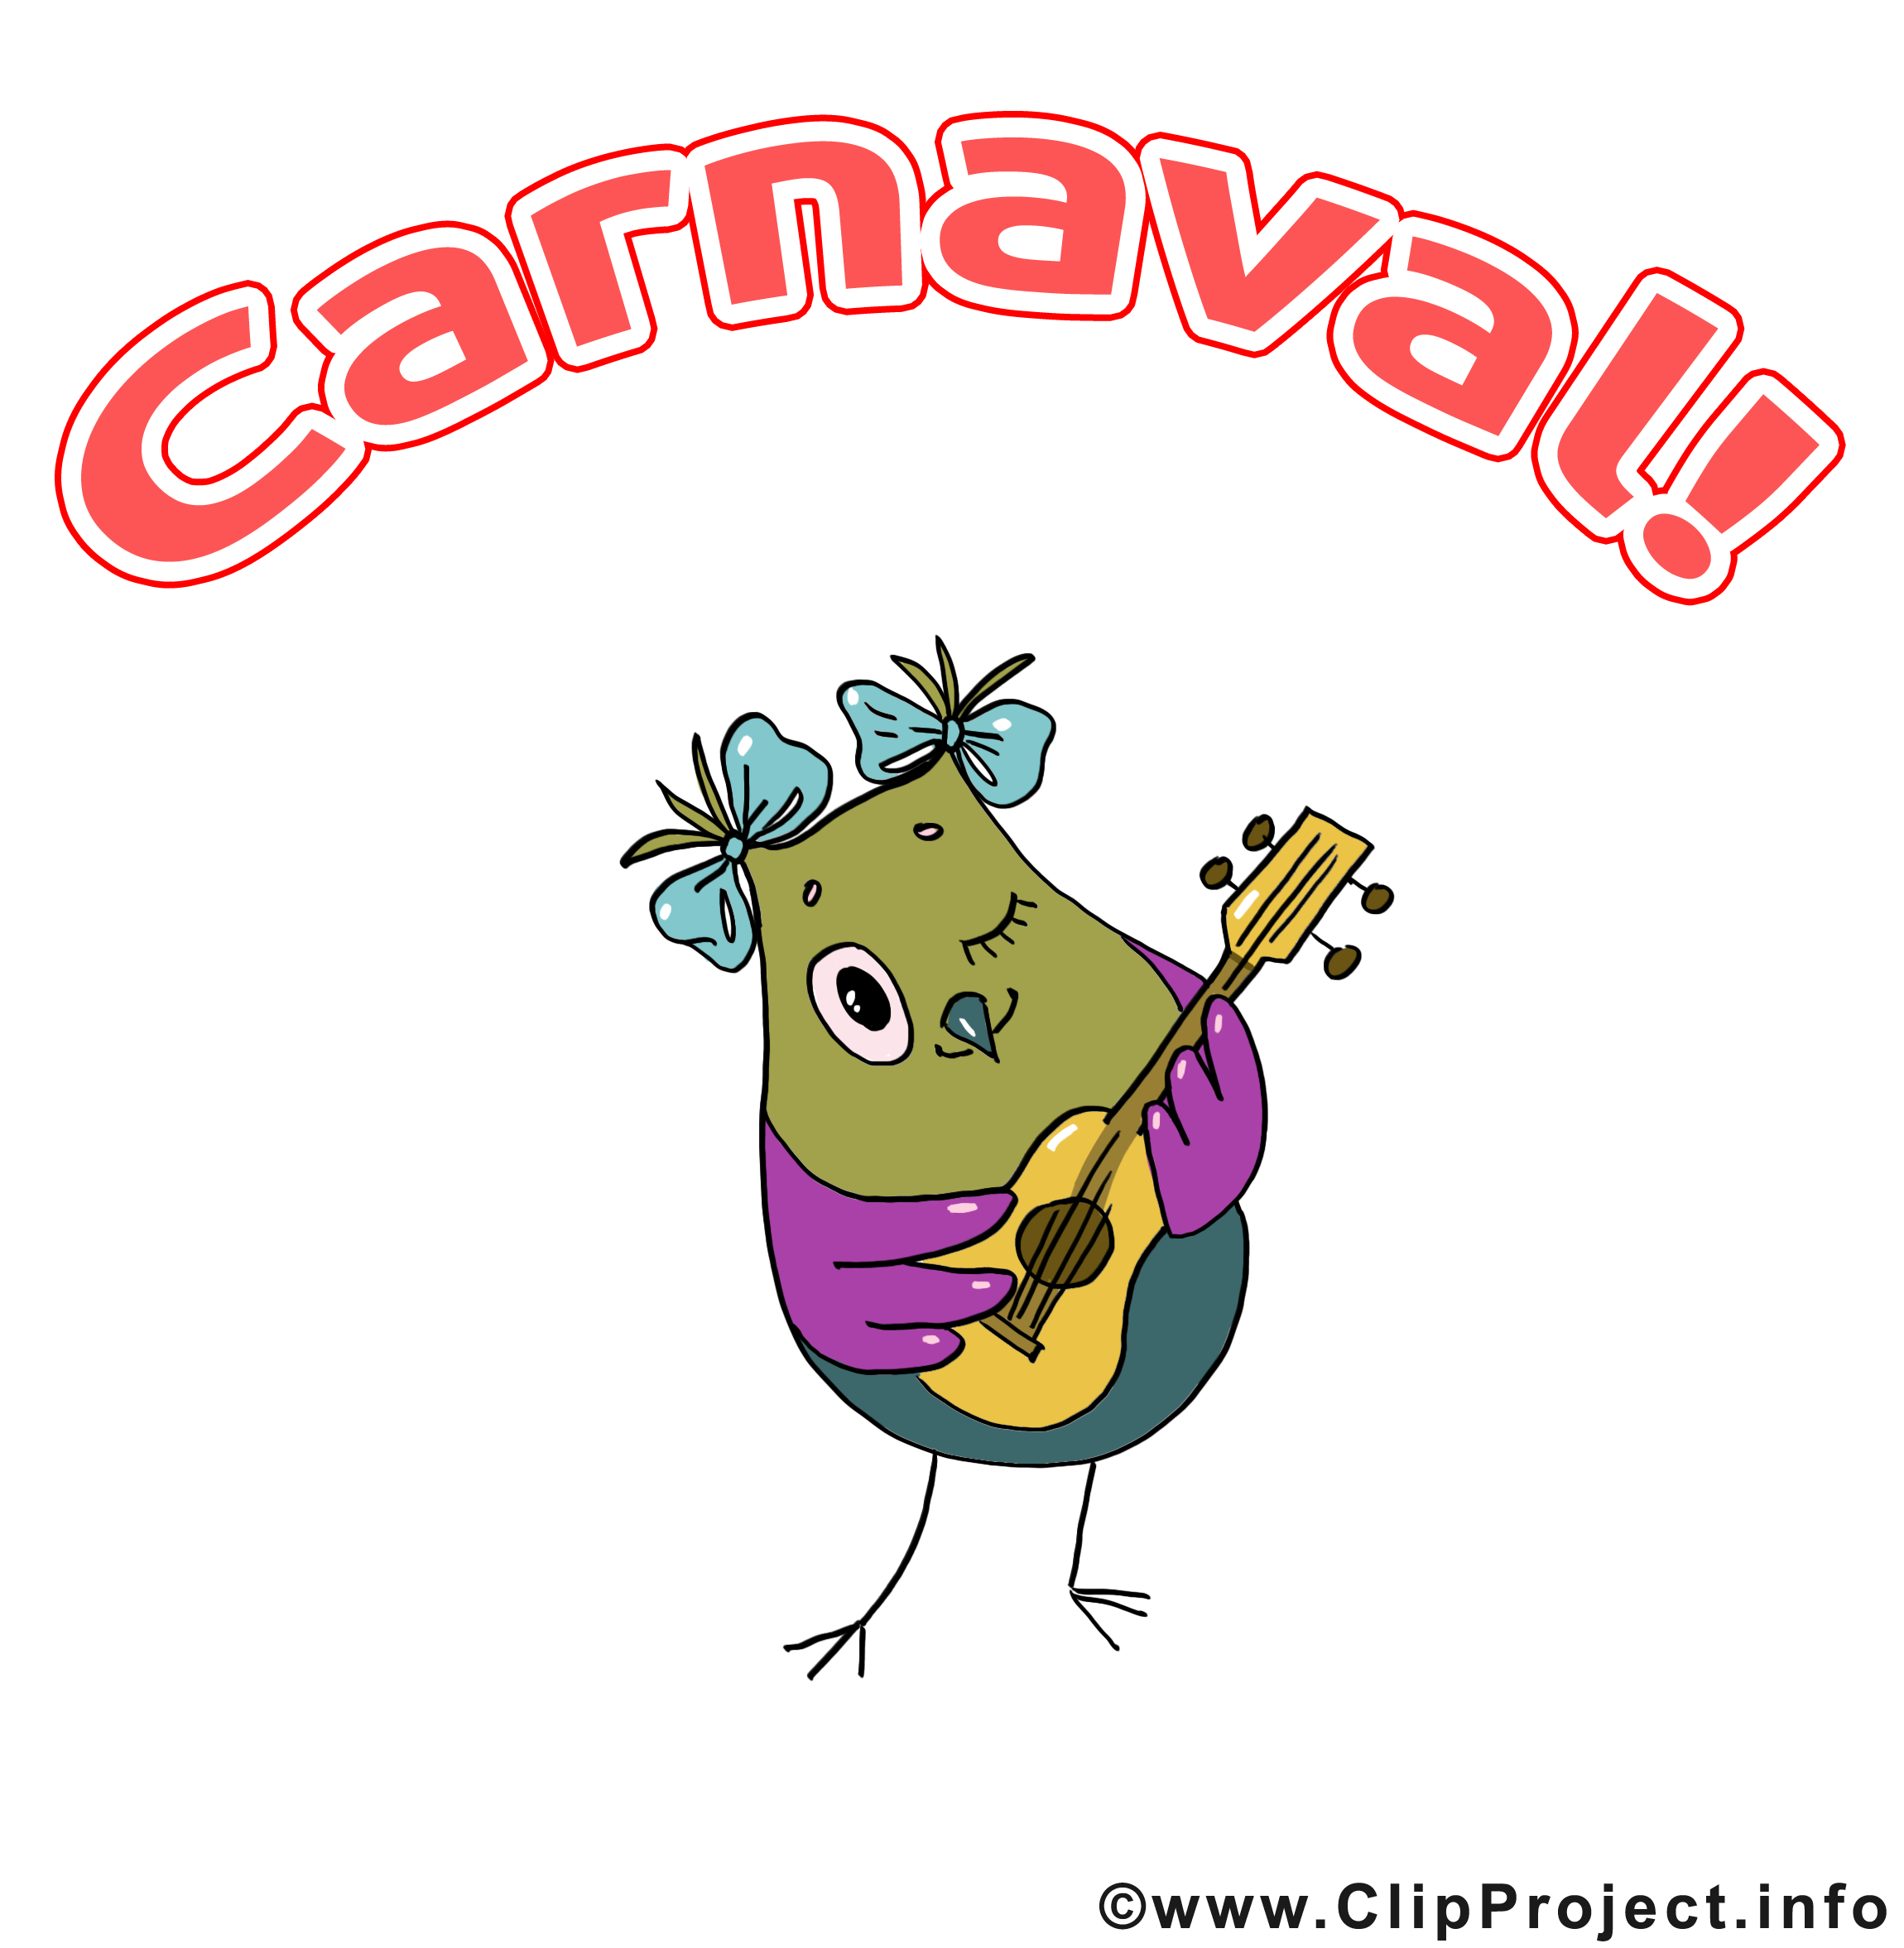 Hibou clipart gratuit – Carnaval images